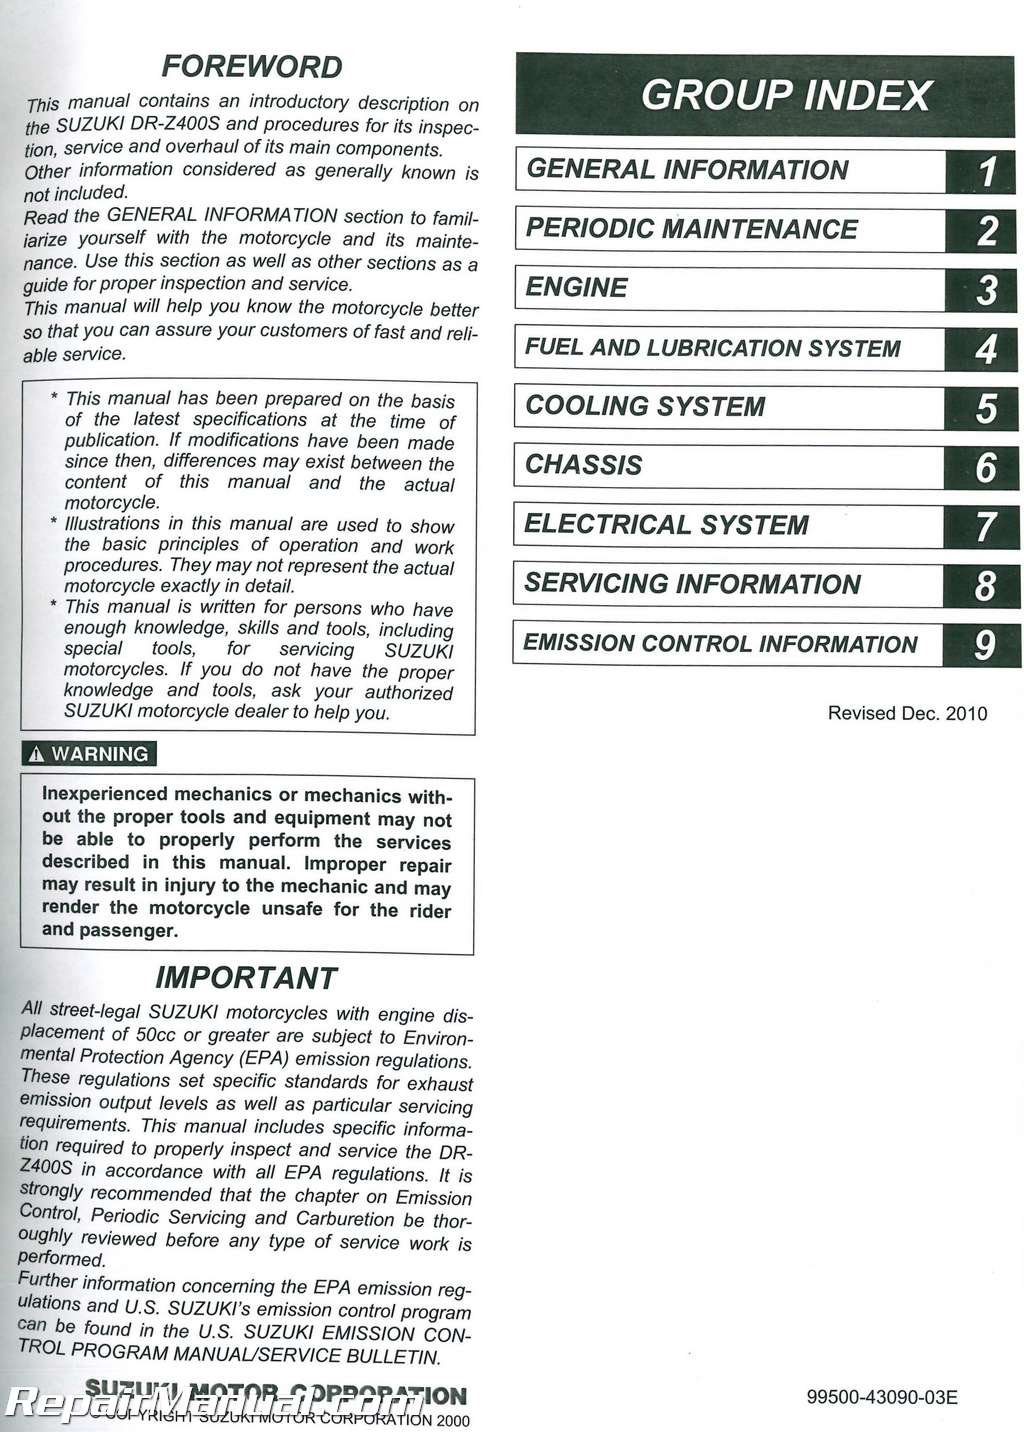 Suzuki drz 400 sm manual pdf